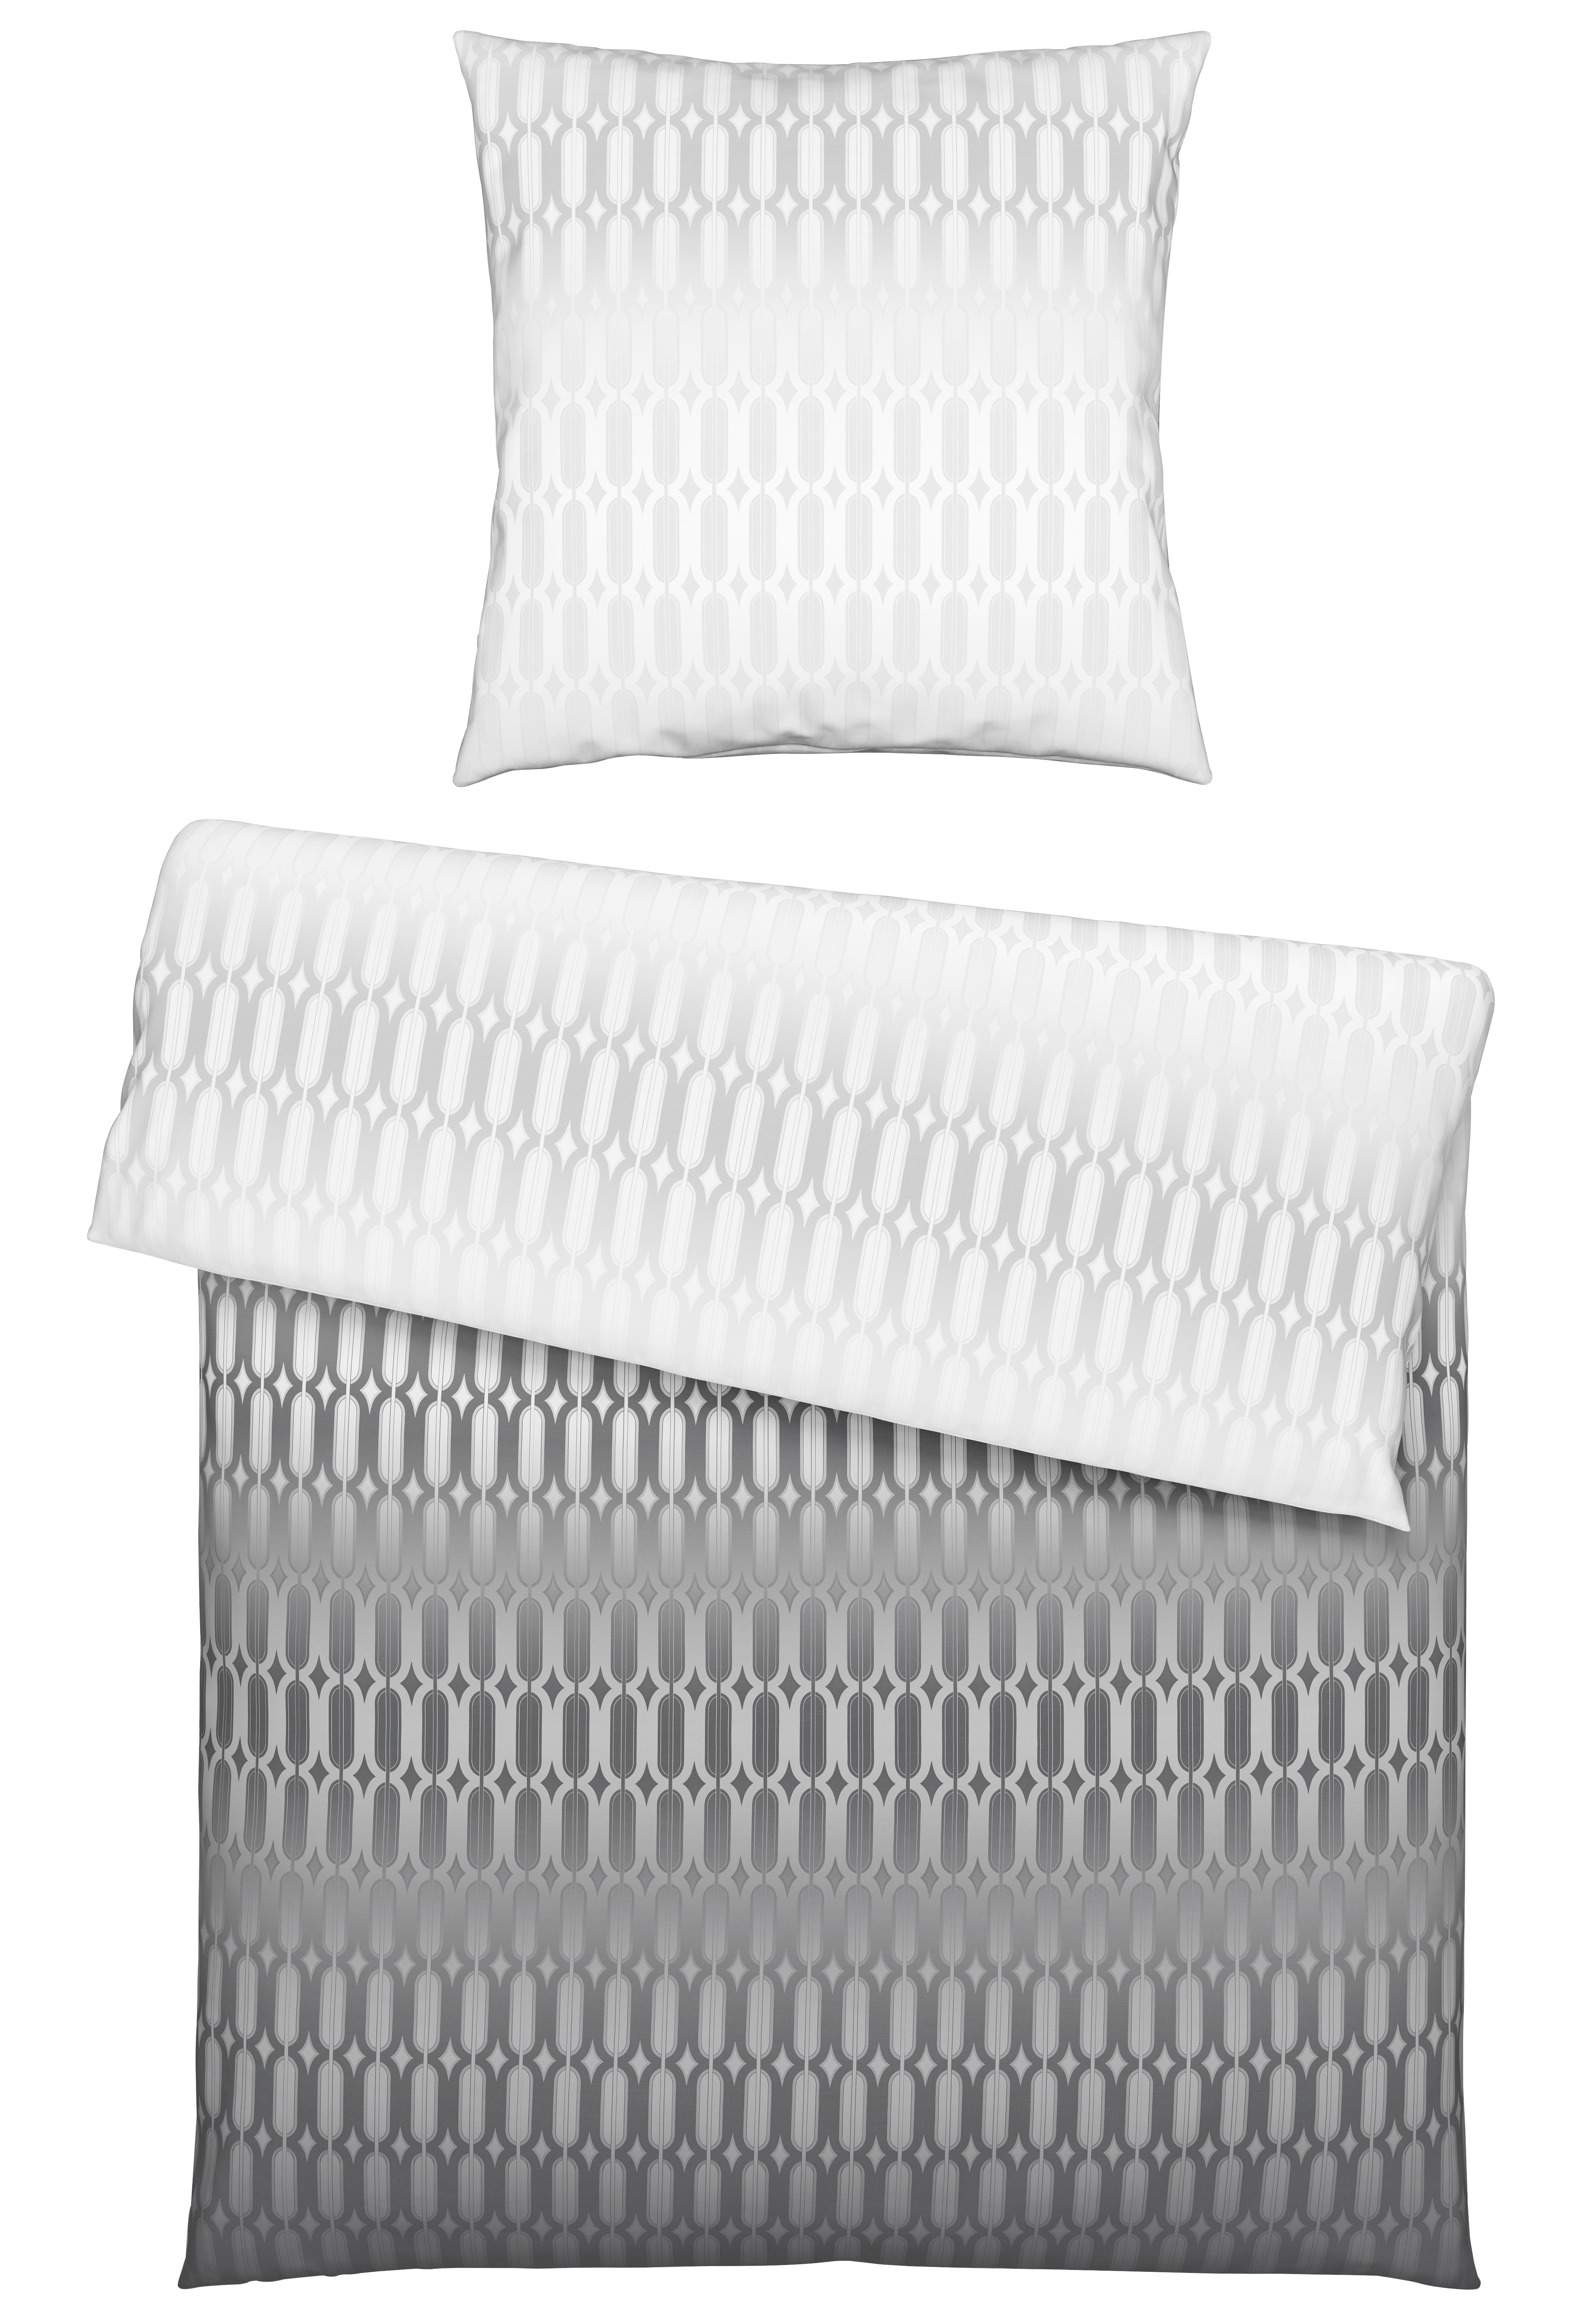 Bettwäsche Picol in Grau/Silber ca. 135x200cm - Silberfarben/Grau, MODERN, Textil (135/200cm) - Premium Living